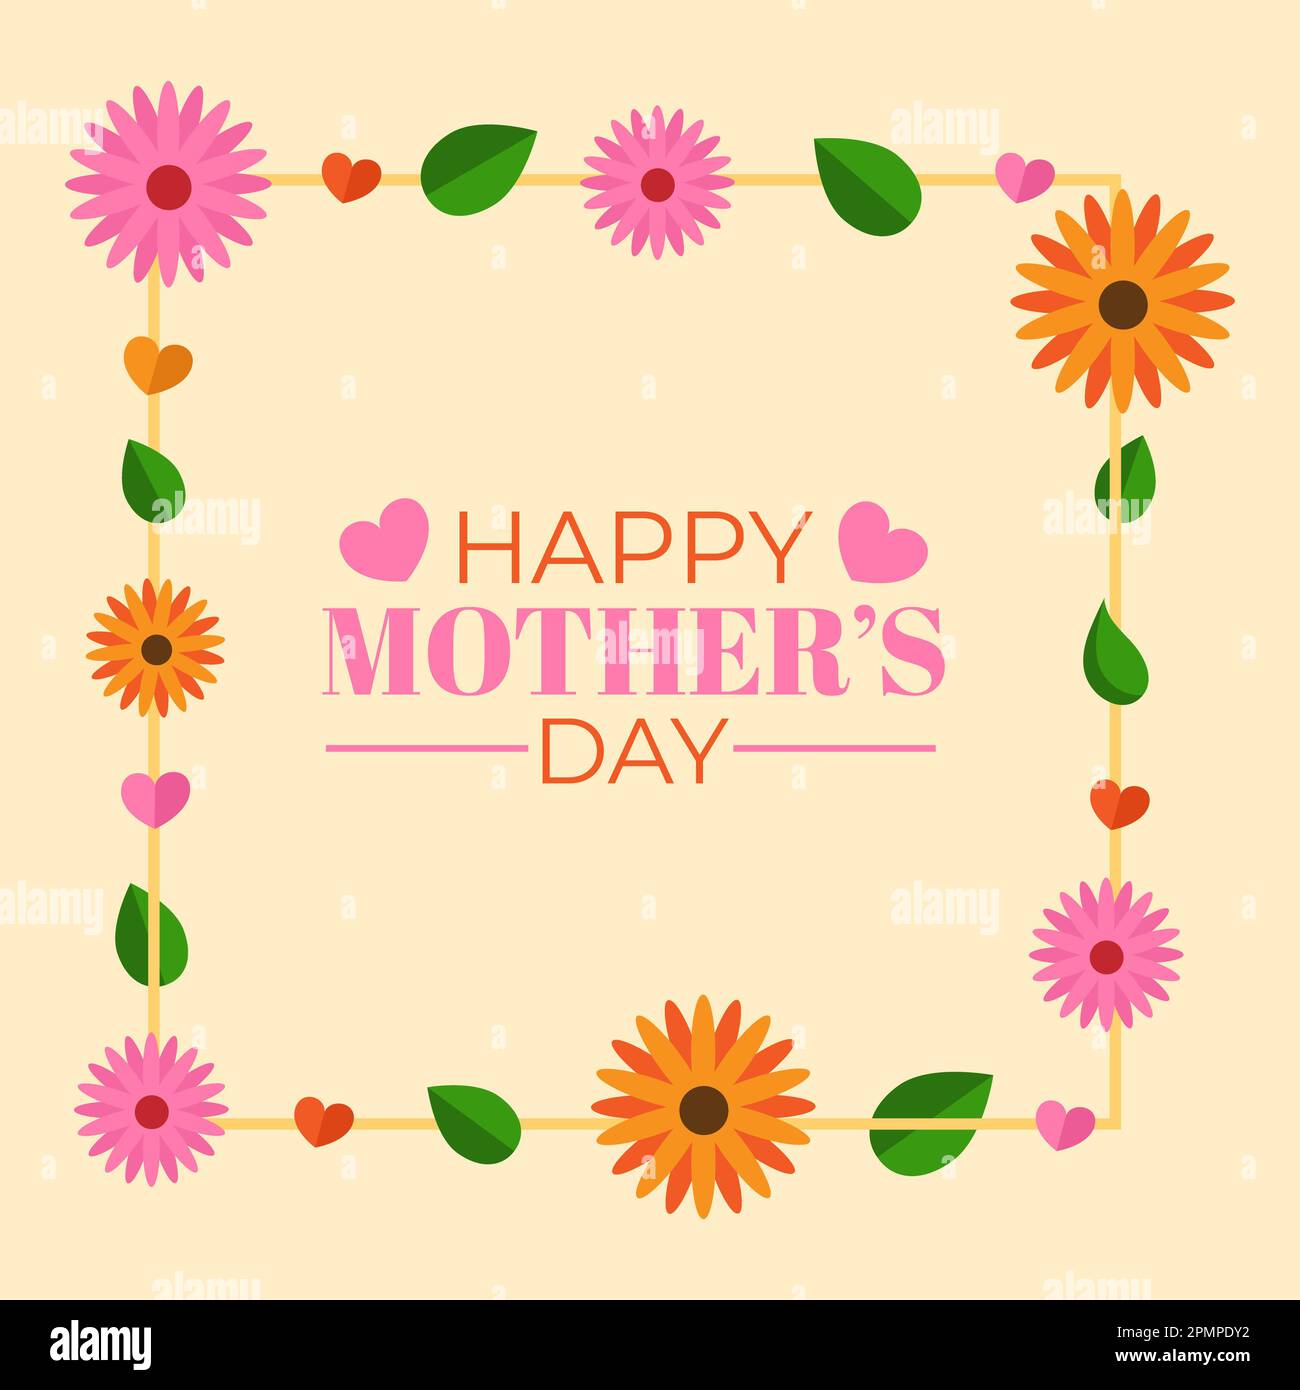 Happy Mother's Day – Blumengrußkarte mit Blumen, Blättern, Herzen, Rahmen und Text zum Muttertag. Stockfoto